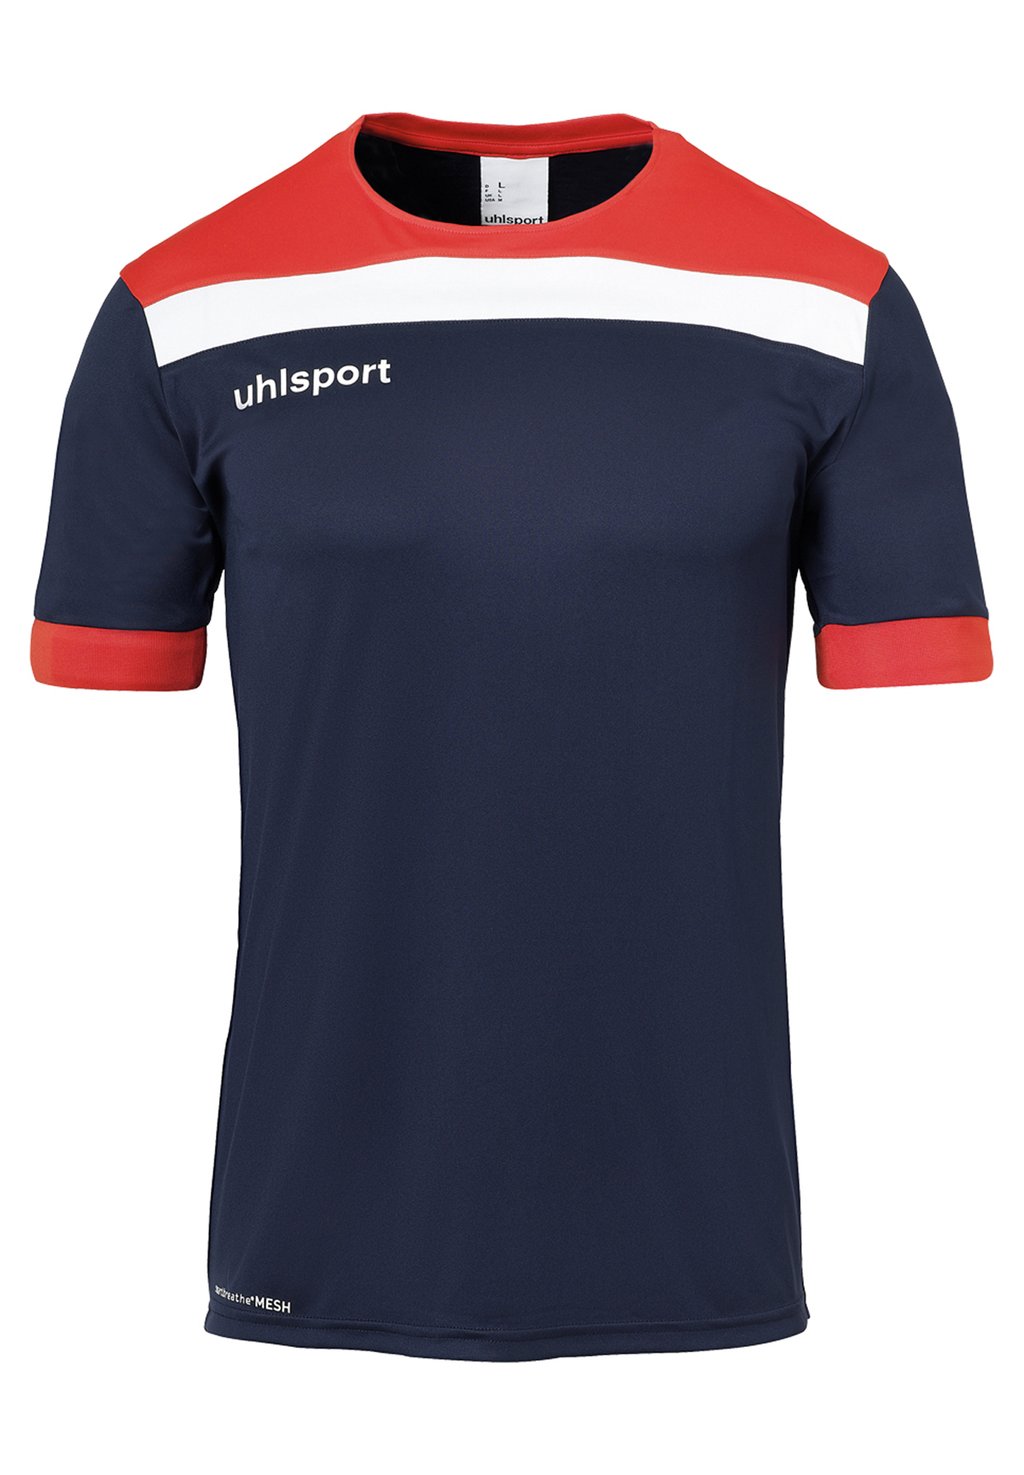 Футболка с принтом uhlsport, цвет marine/rot/weiß футболка с принтом uhlsport цвет marine marine